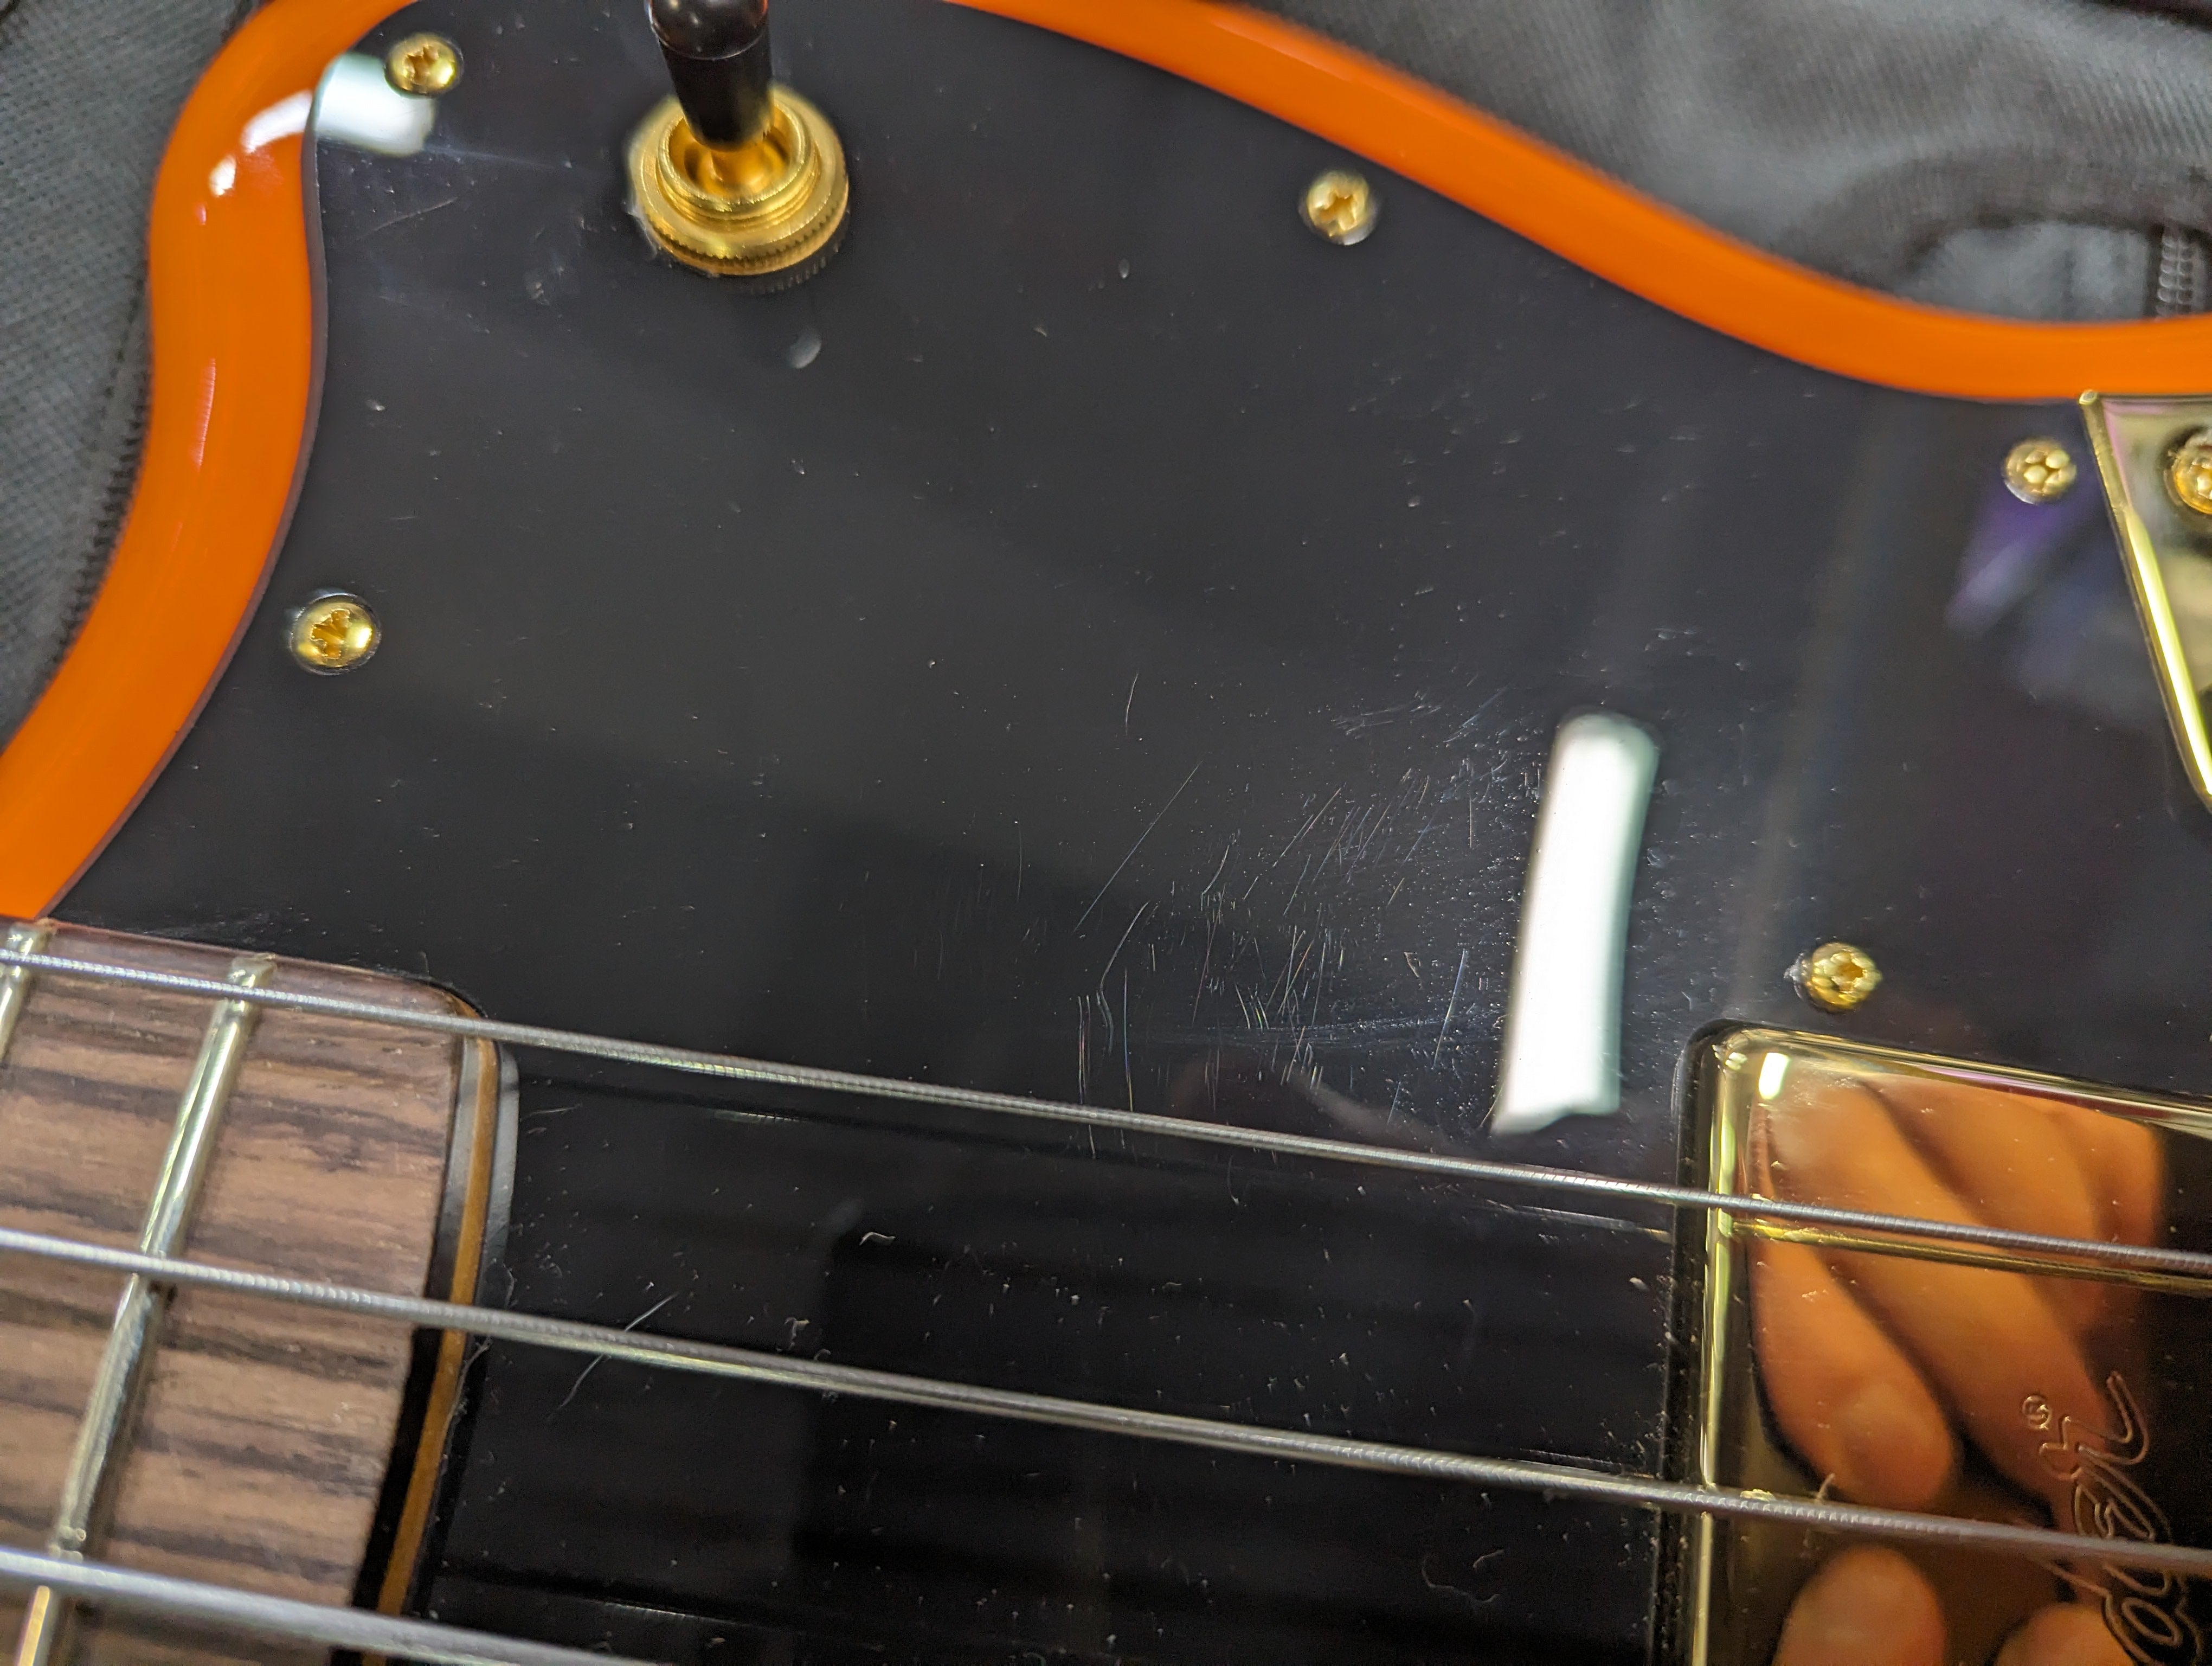 Fender Artist Limited Edition Mike Kerr Jaguar Bass Tiger's Blood Orange